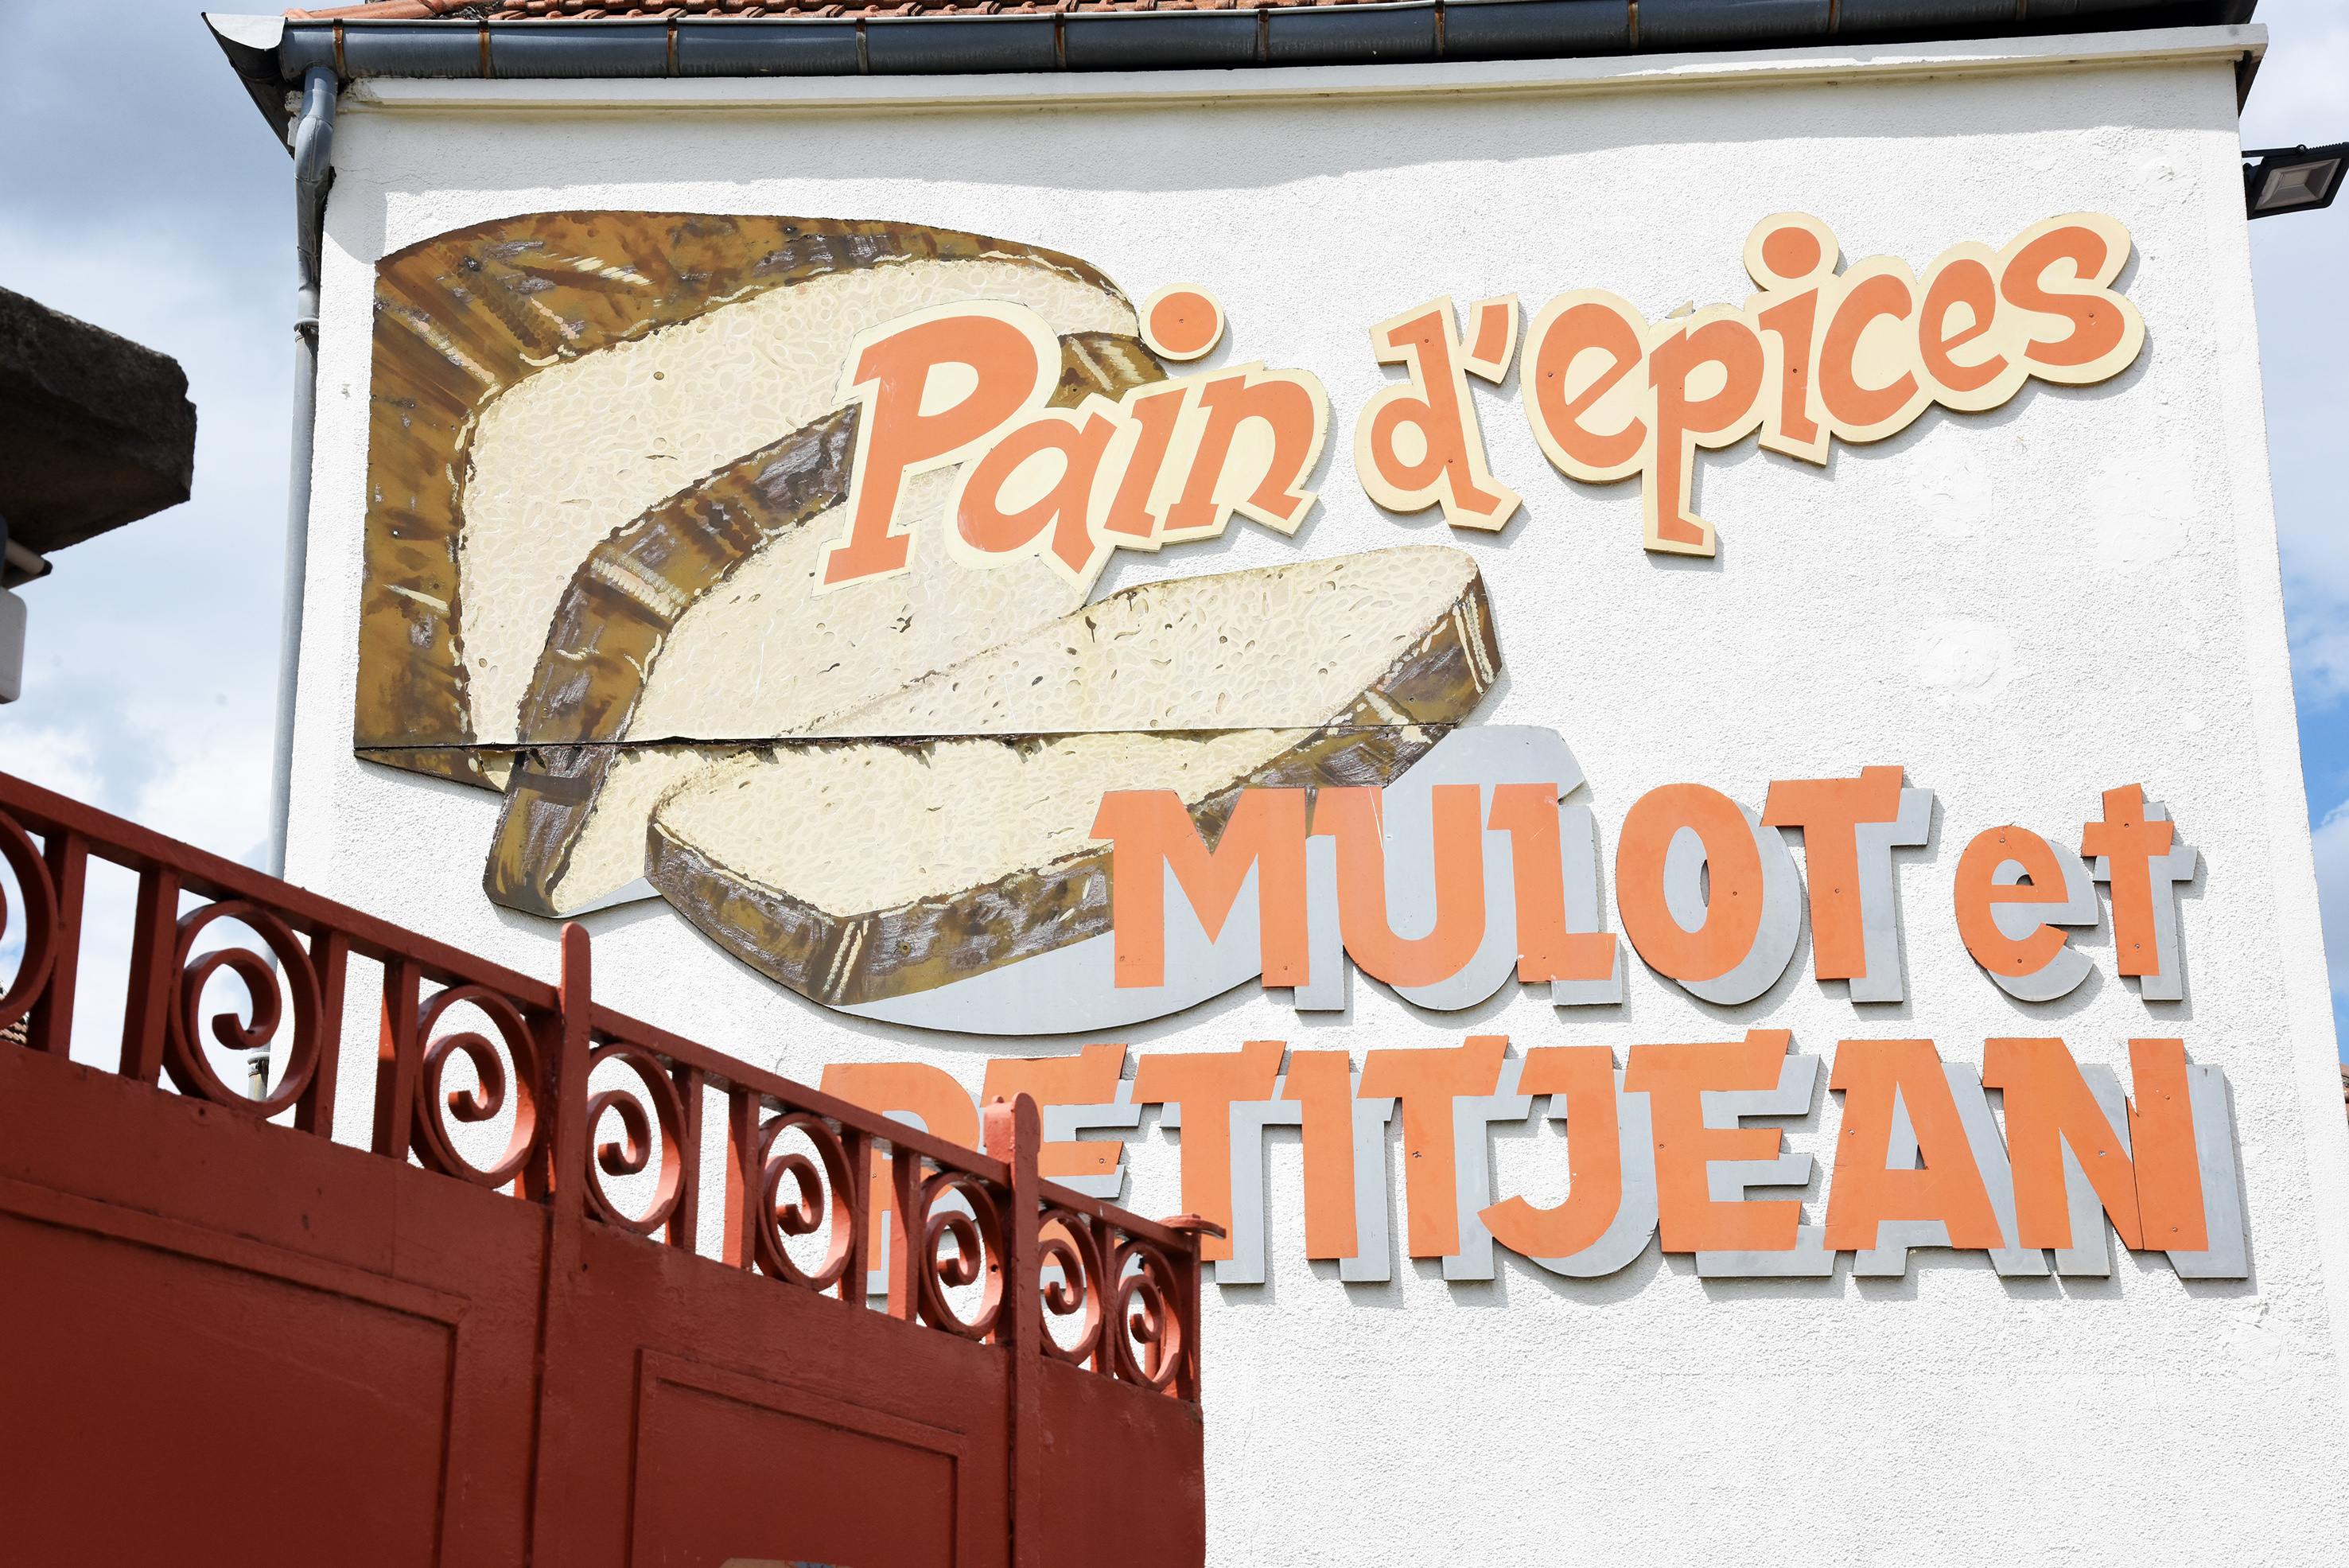 Visite la Fabrique de Pain D’Épices Mulot & Petitjean 